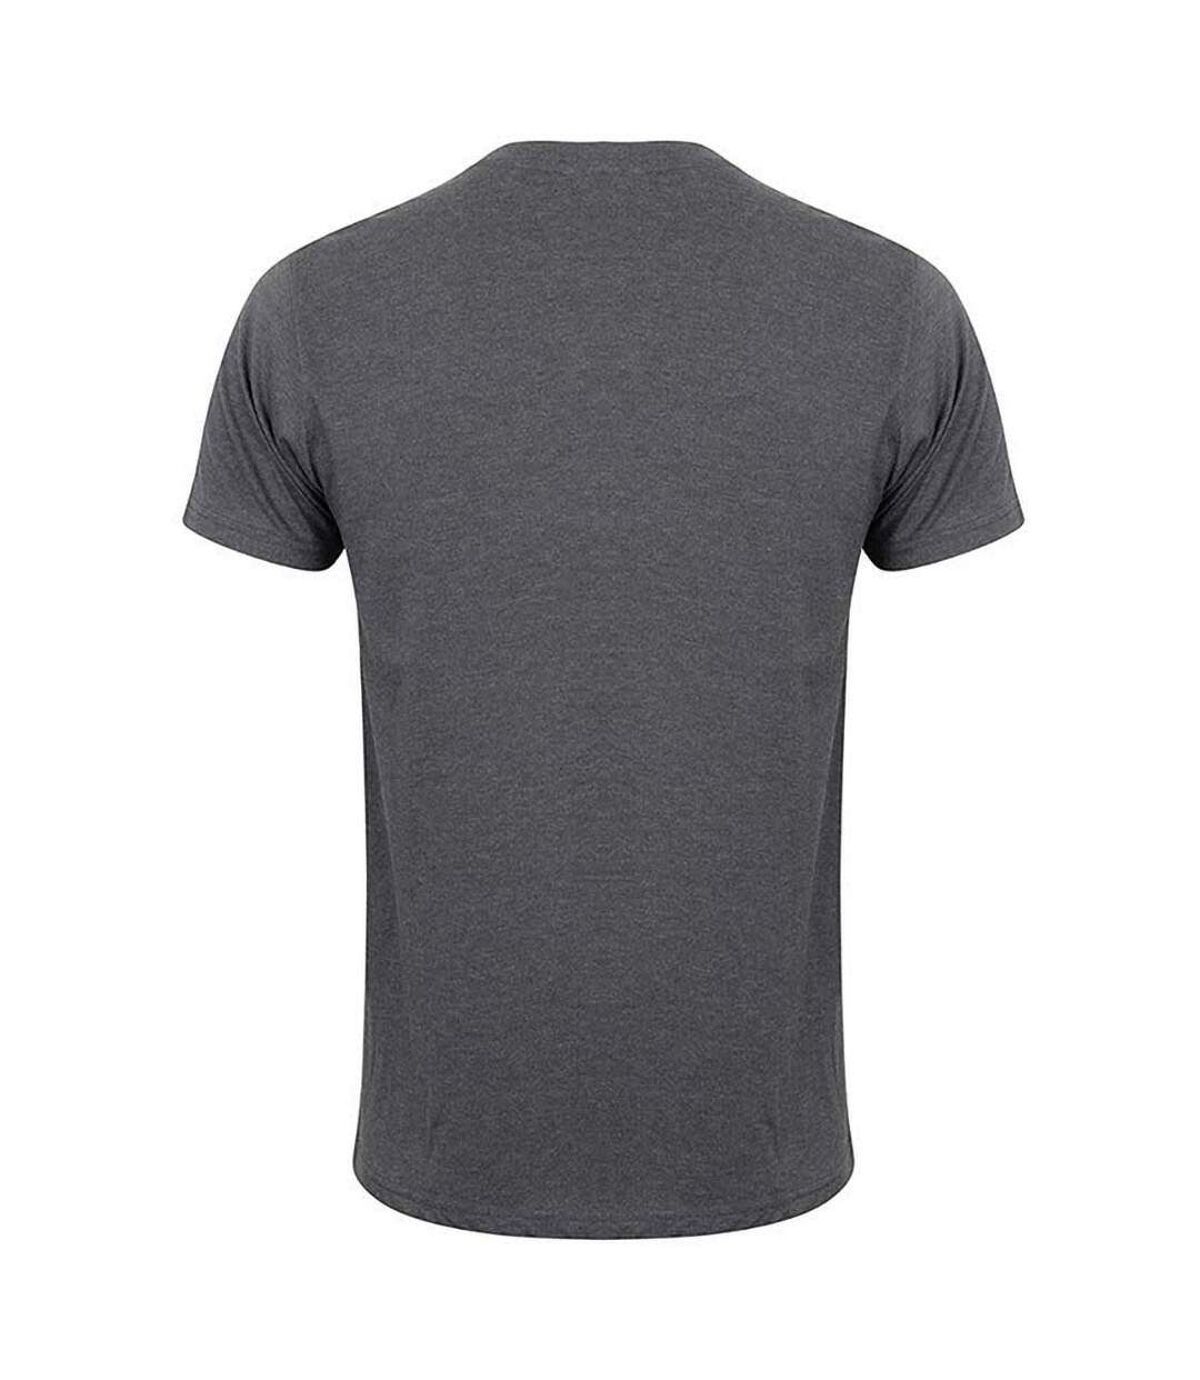 Skinni Fit - T-shirt manches courtes FEEL GOOD - Homme (Gris foncé chiné) - UTRW4427